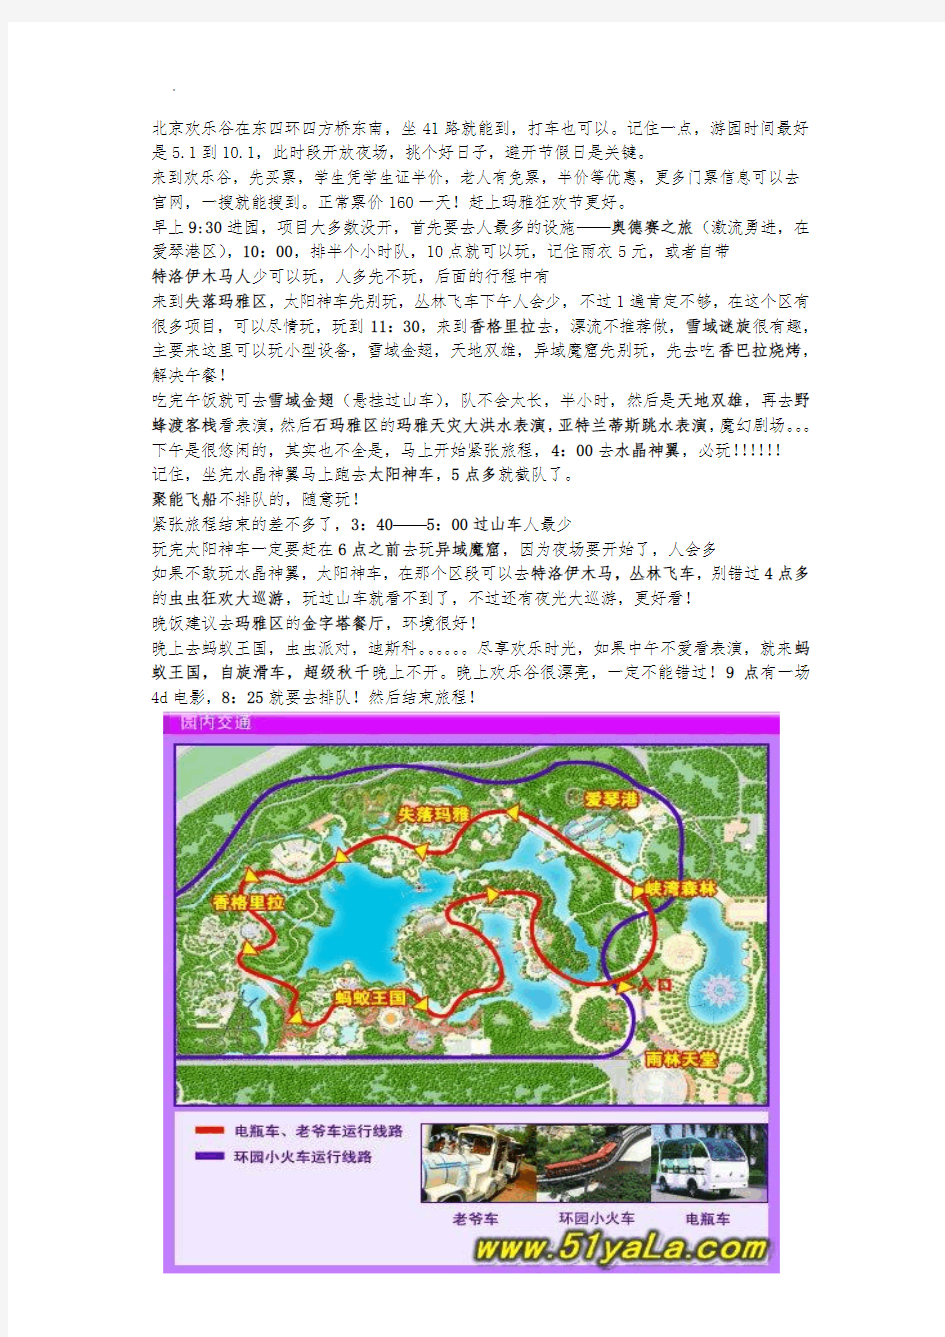 北京欢乐谷游玩攻略附地图